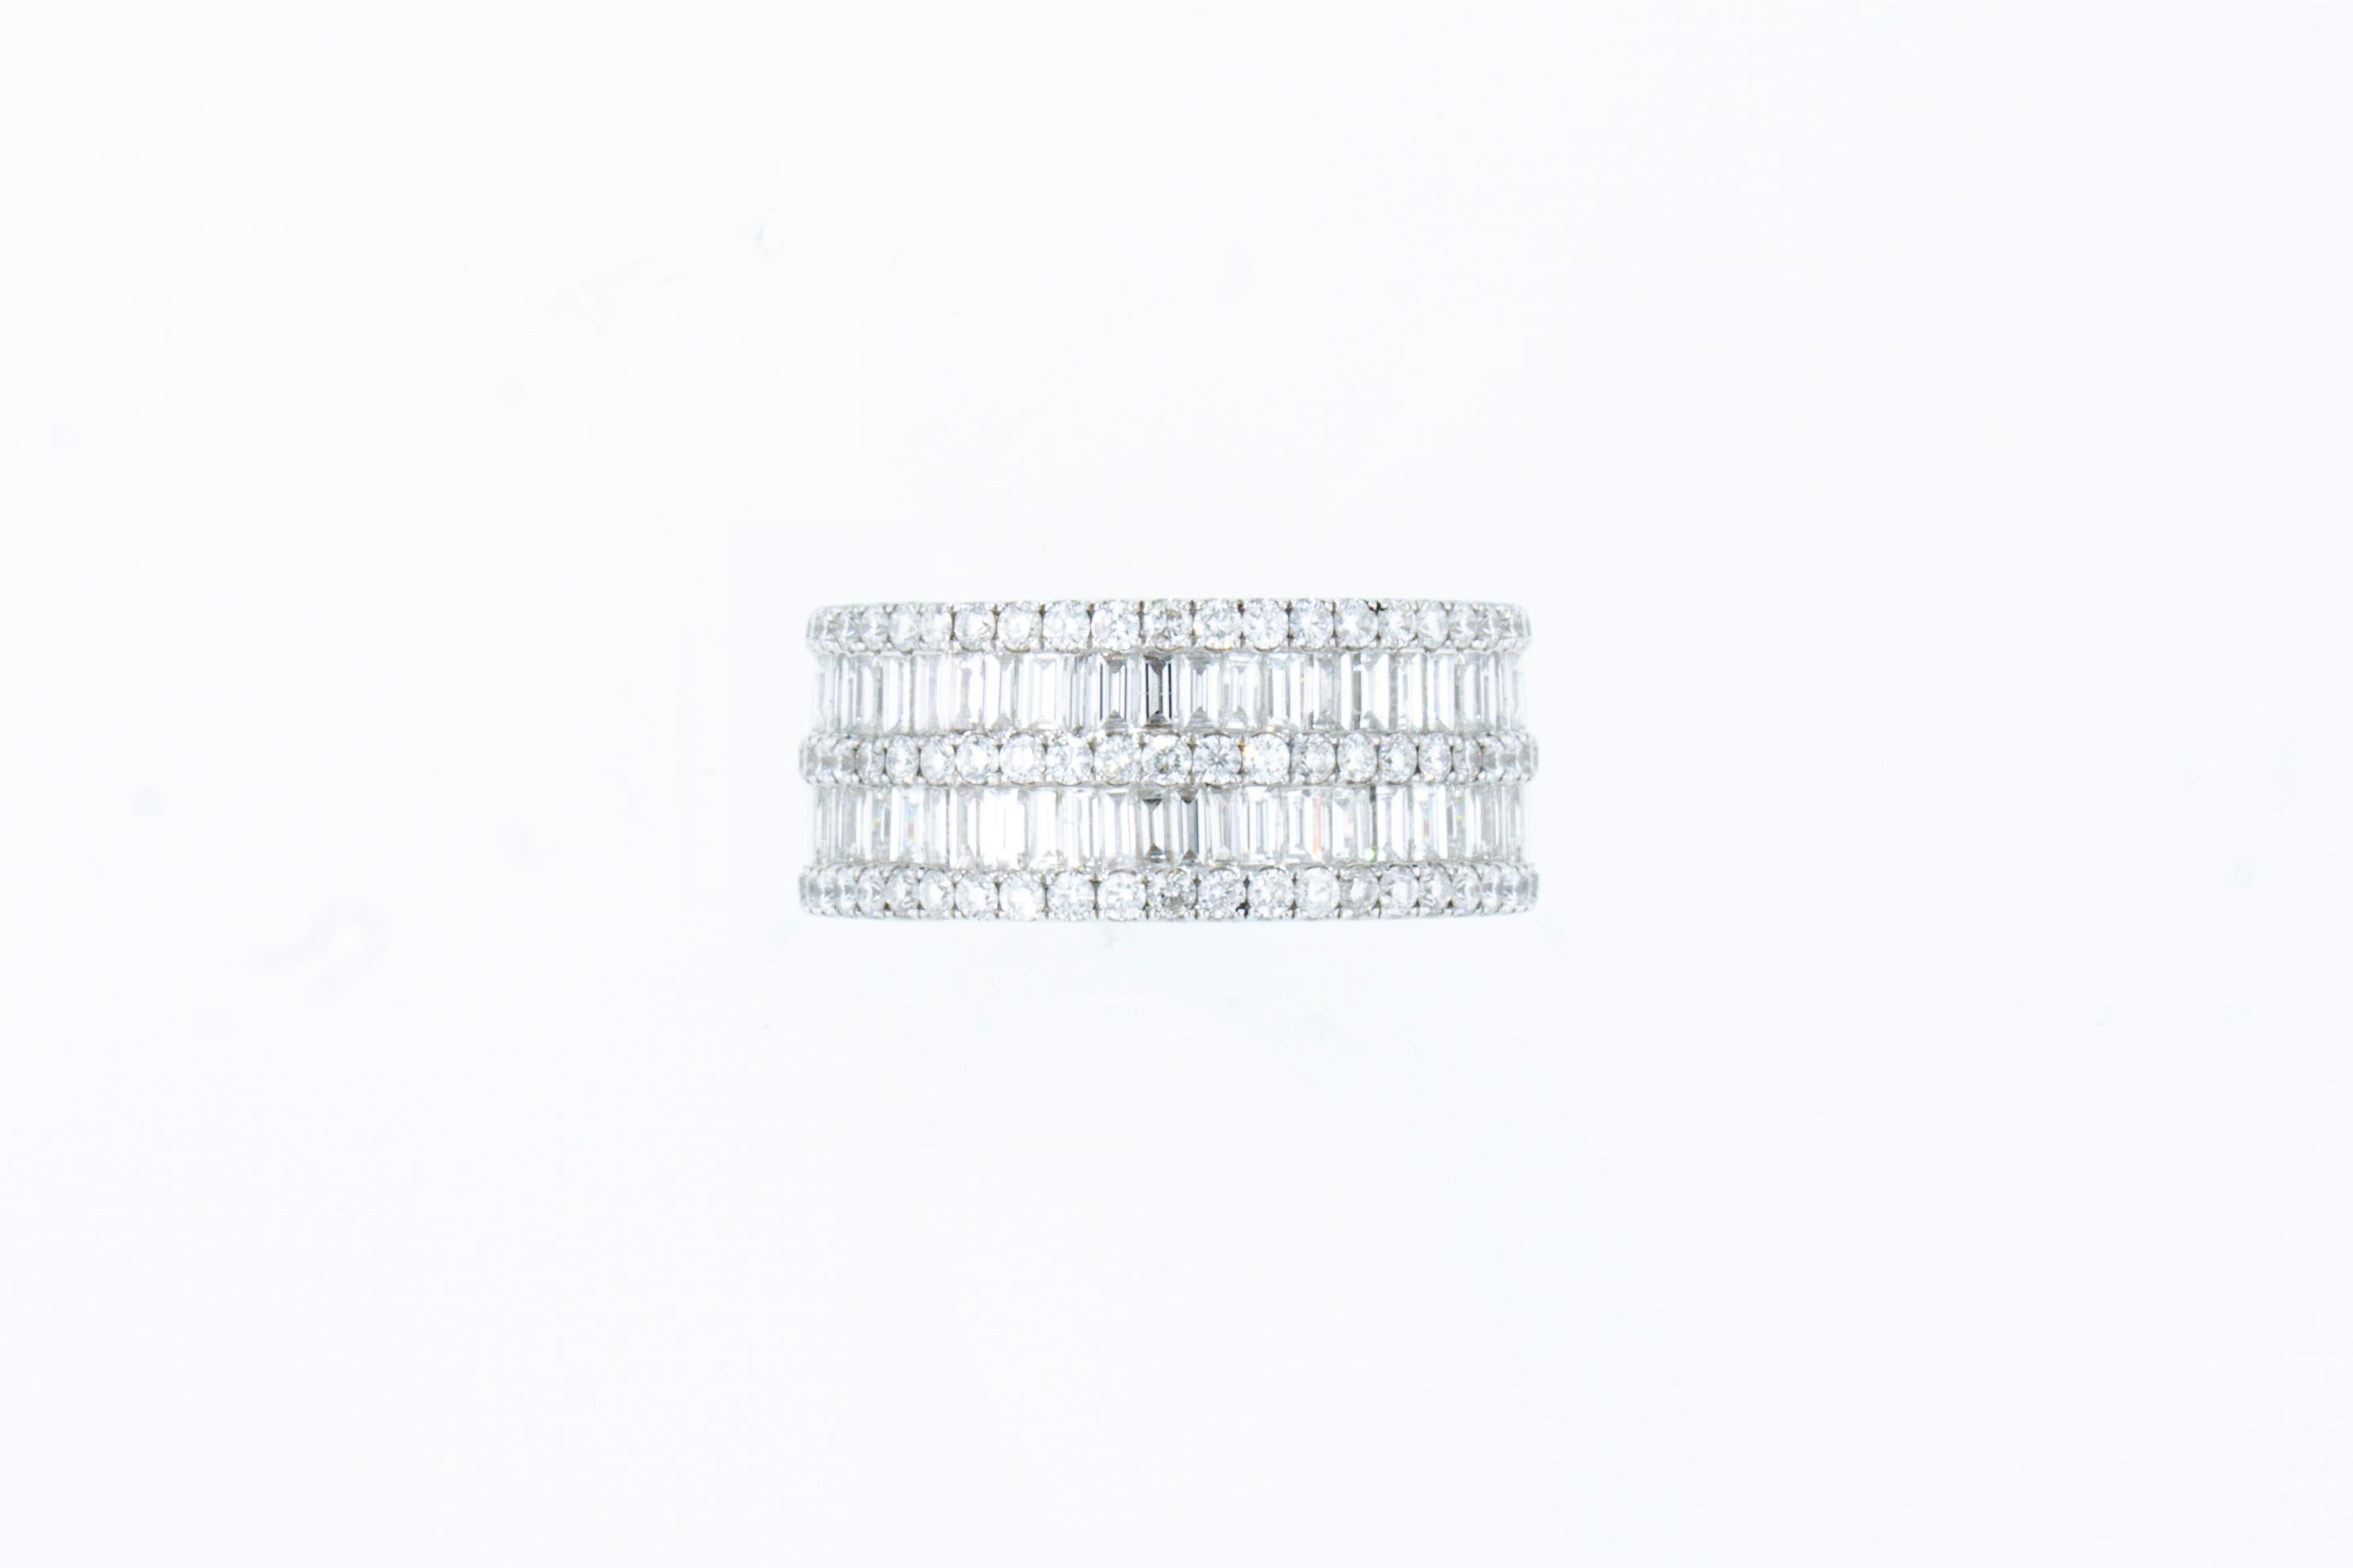 L'anneau est composé de 2 rangées de diamants de taille baguette et de 3 rangées de diamants de taille brillant. 
Le poids total en carats est de 2,03 ct. 
La bague est en or blanc 18 carats.
Le produit est fabriqué en Italie.
Il est possible de